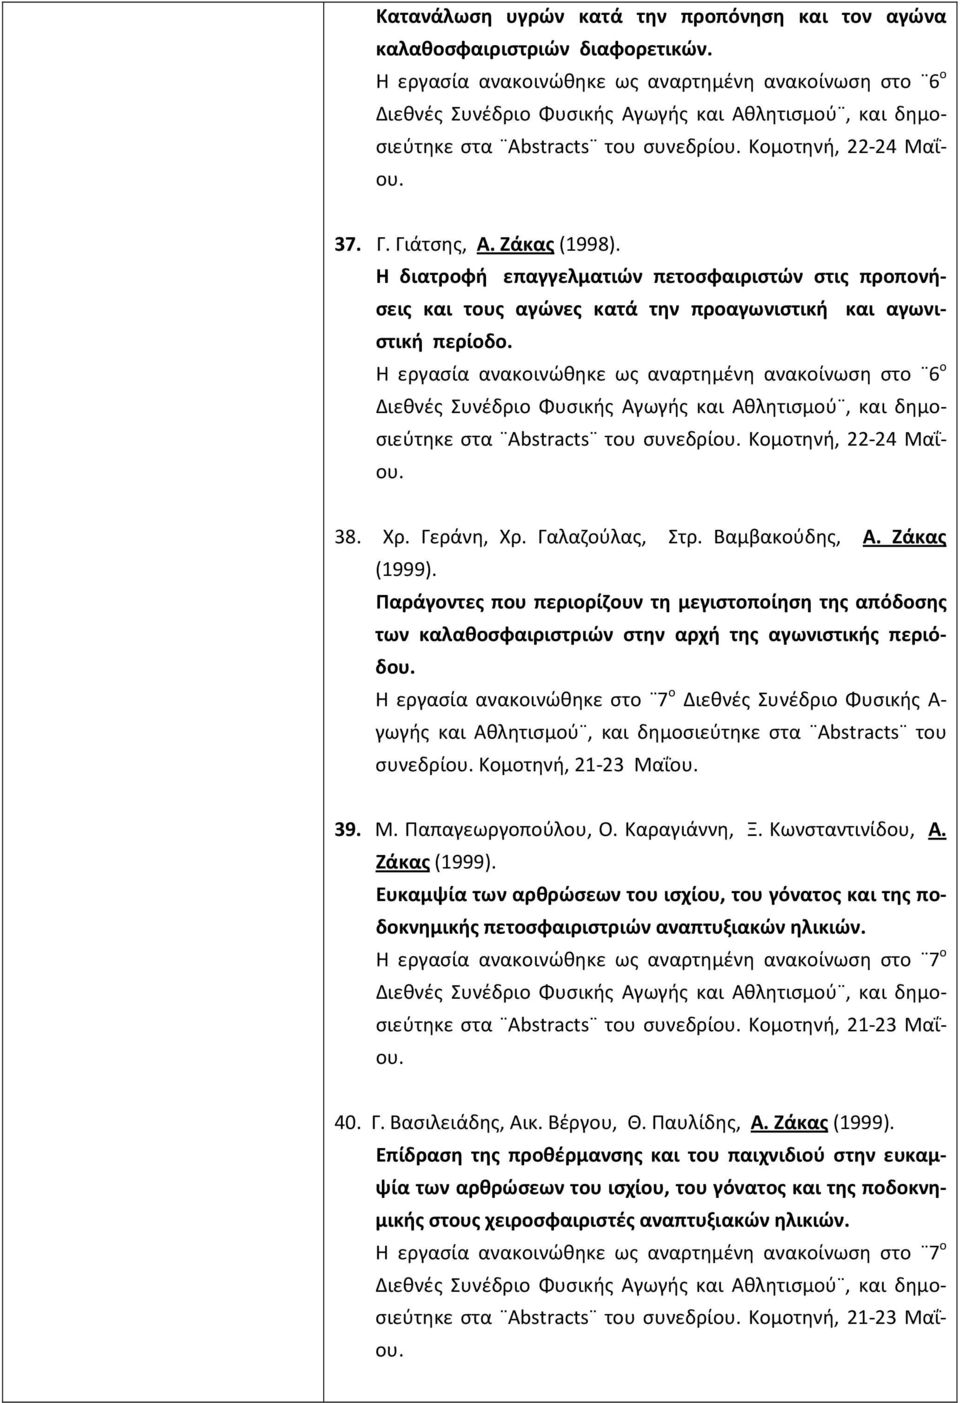 Η εργασία ανακοινώθηκε ως αναρτημένη ανακοίνωση στο 6 ο στα Abstracts του συνεδρίου. Κομοτηνή, 22-24 Μαΐου. 38. Χρ. Γεράνη, Χρ. Γαλαζούλας, Στρ. Βαμβακούδης, Α. Ζάκας (1999).